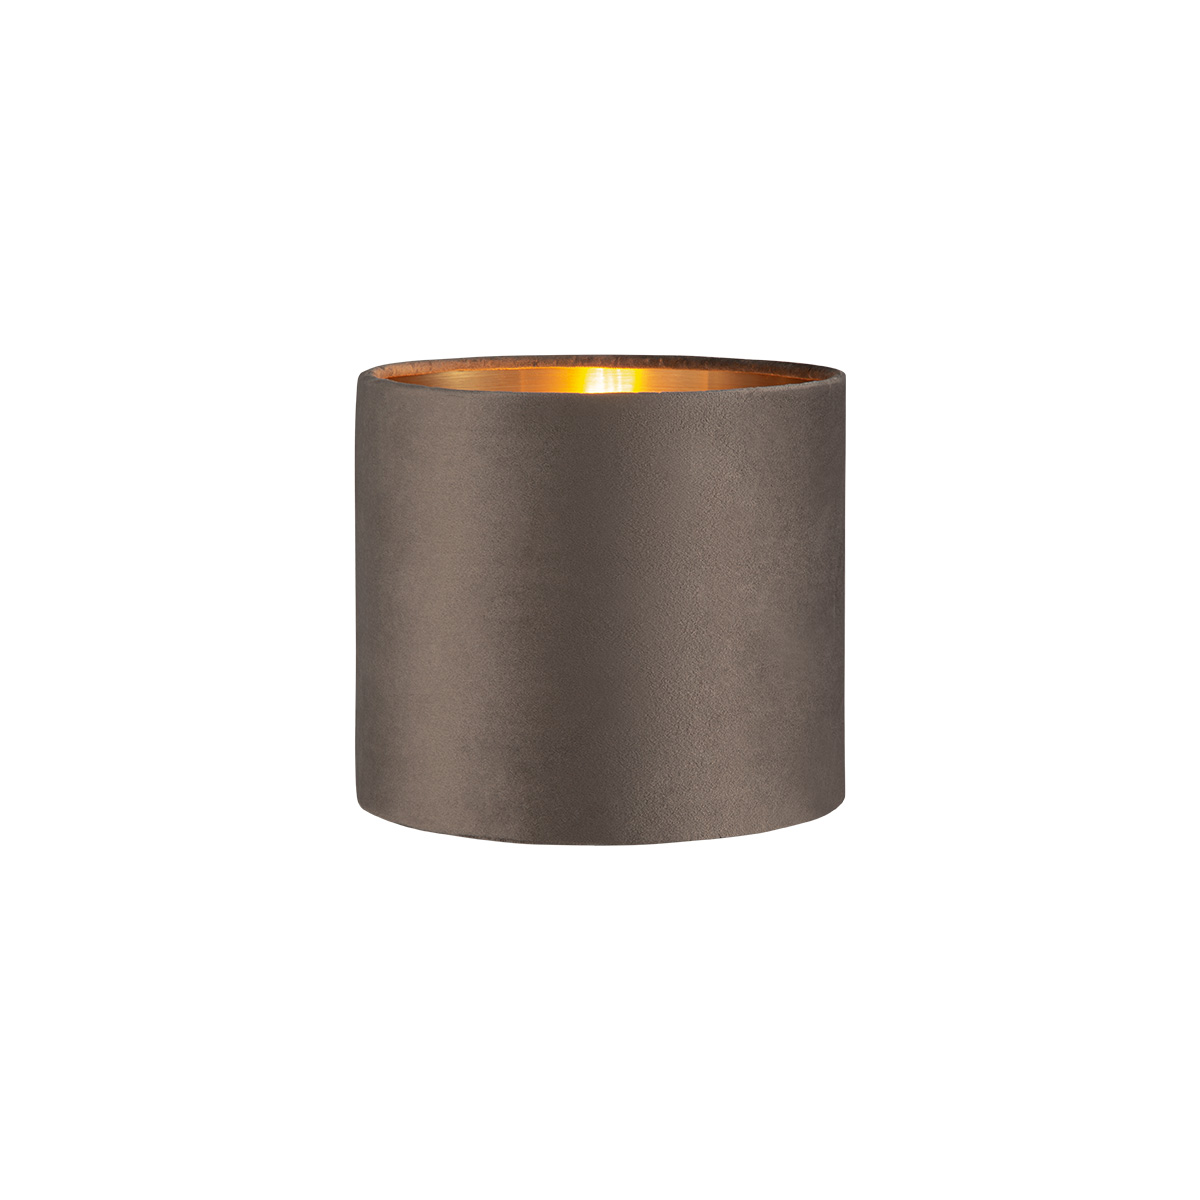 Tangla lighting - TLS7564-20DG - Lampshade - velvet - dark grey - diameter 20cm - E27